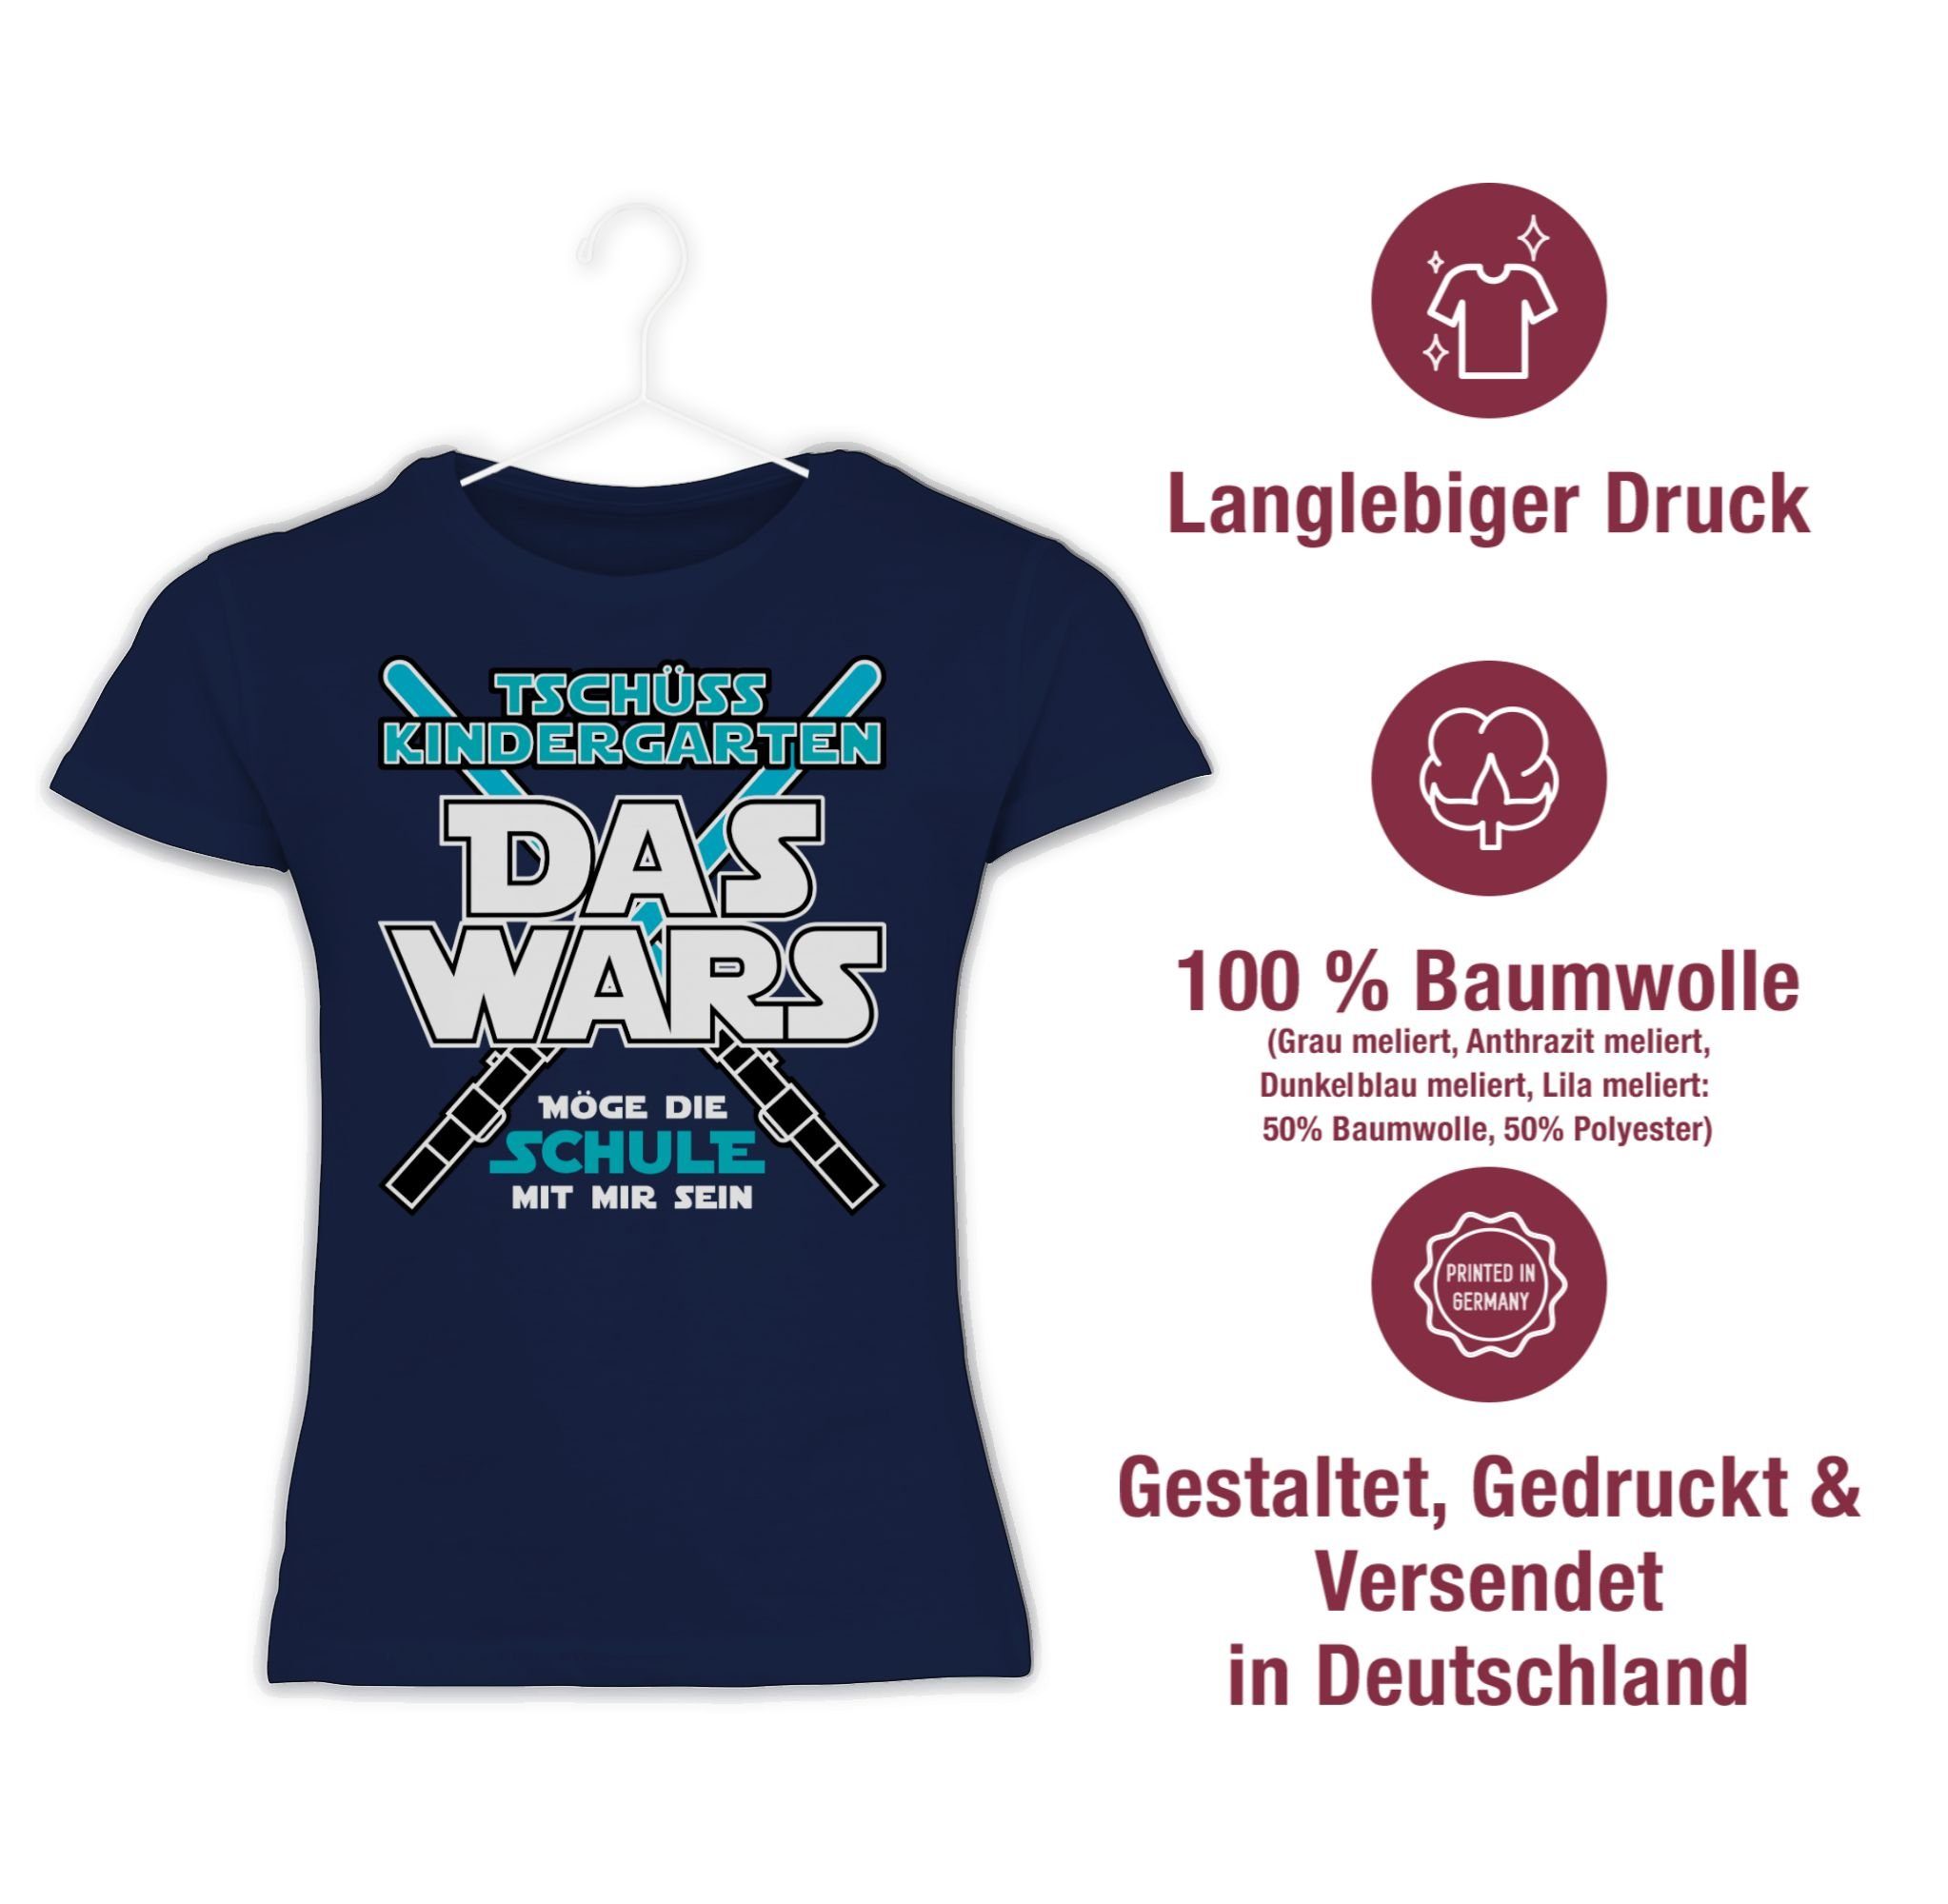 Mädchen Das Einschulung 2 T-Shirt Dunkelblau Kindergarten Wars Shirtracer Kita Tschüss